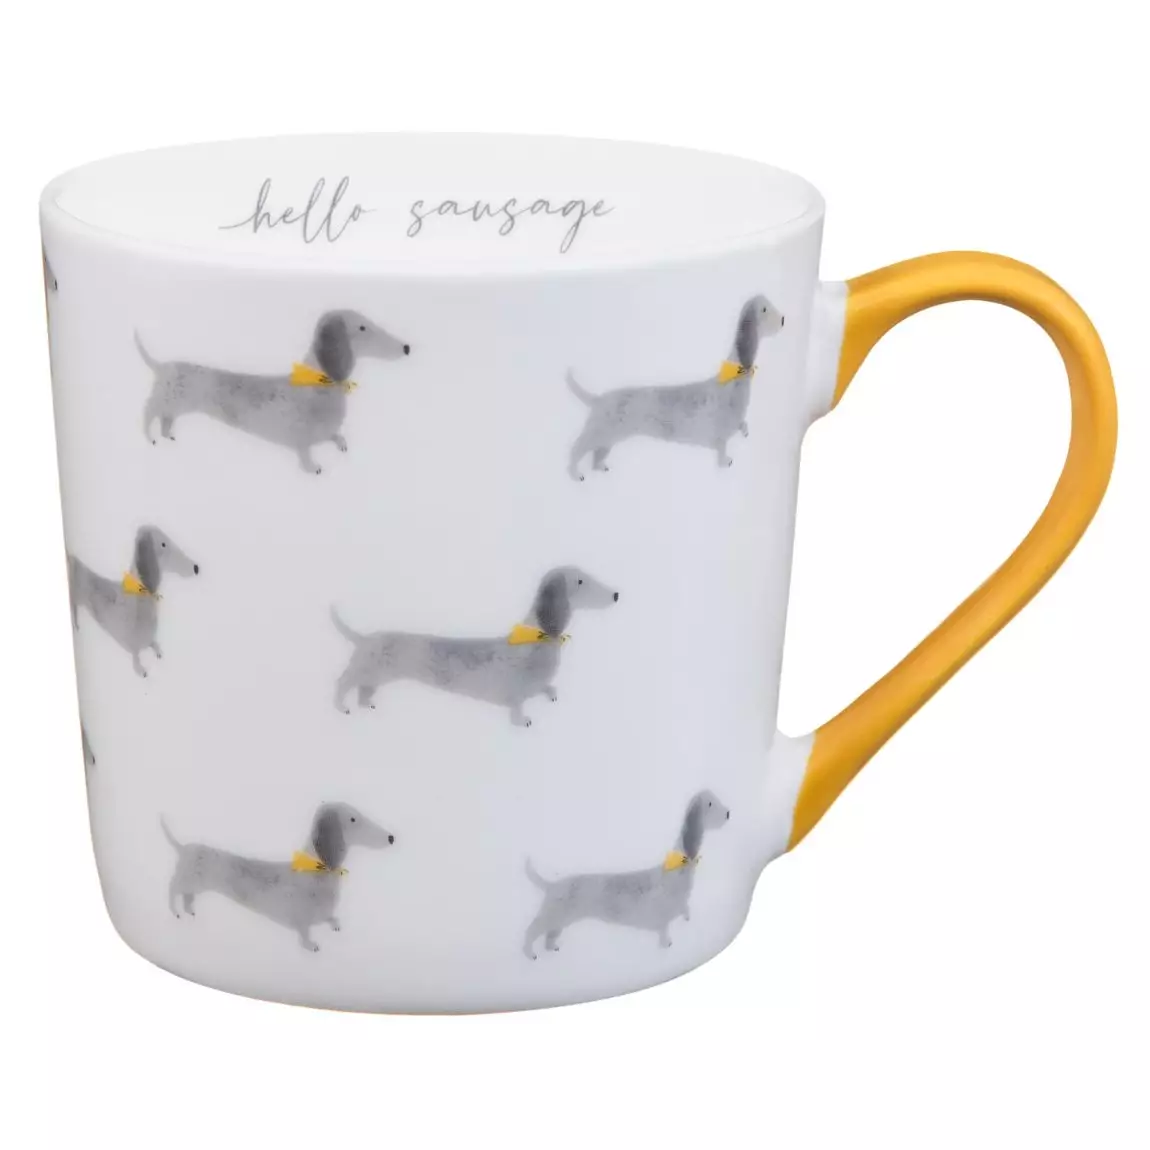 The adorable sausage dog mug (